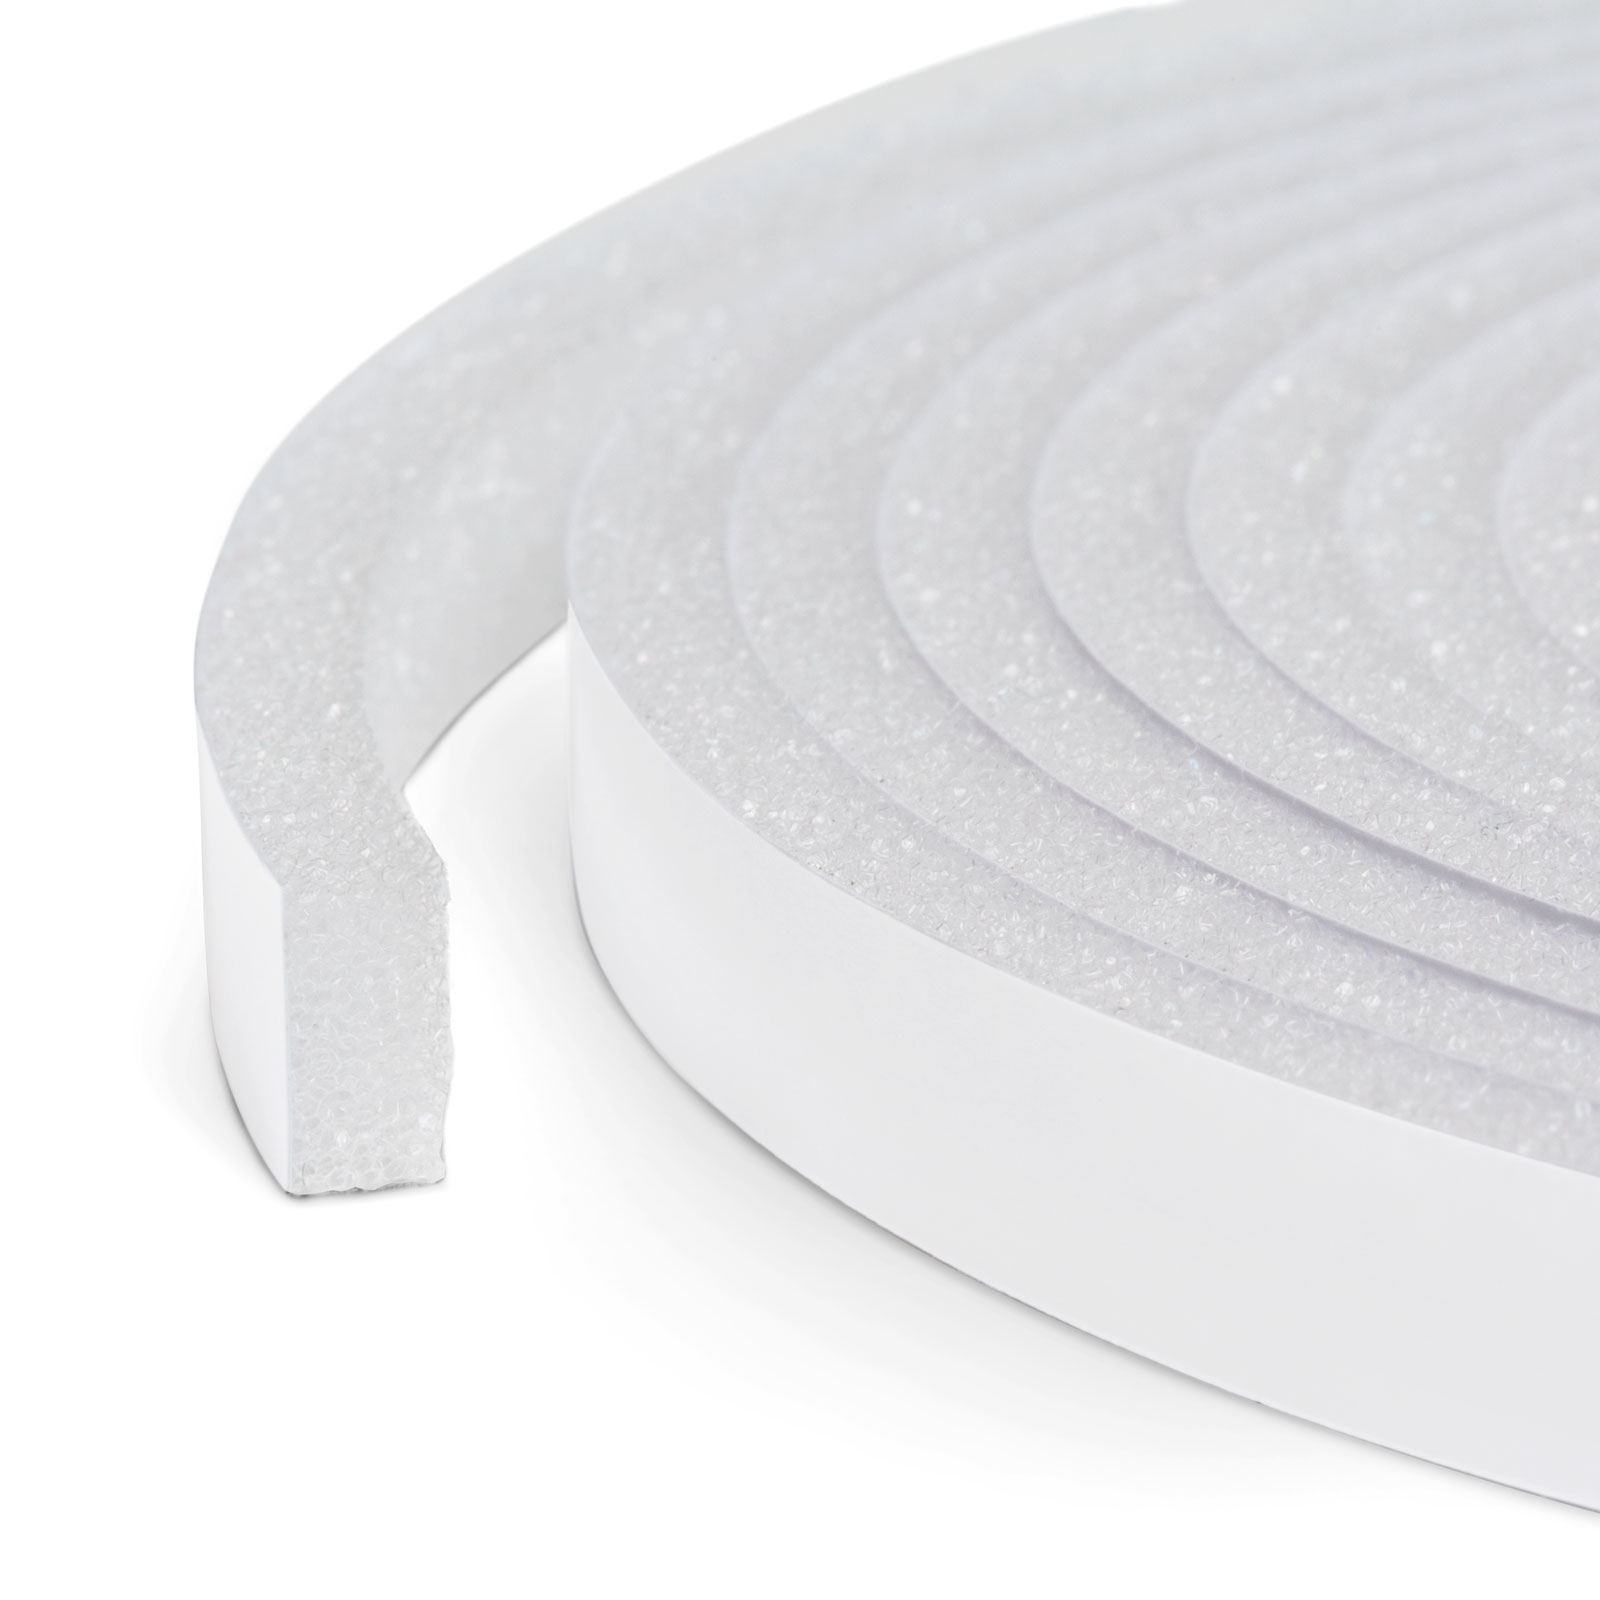 Self-adhesive door-window insulation foam tape - 6 m - white 10 mm thumb